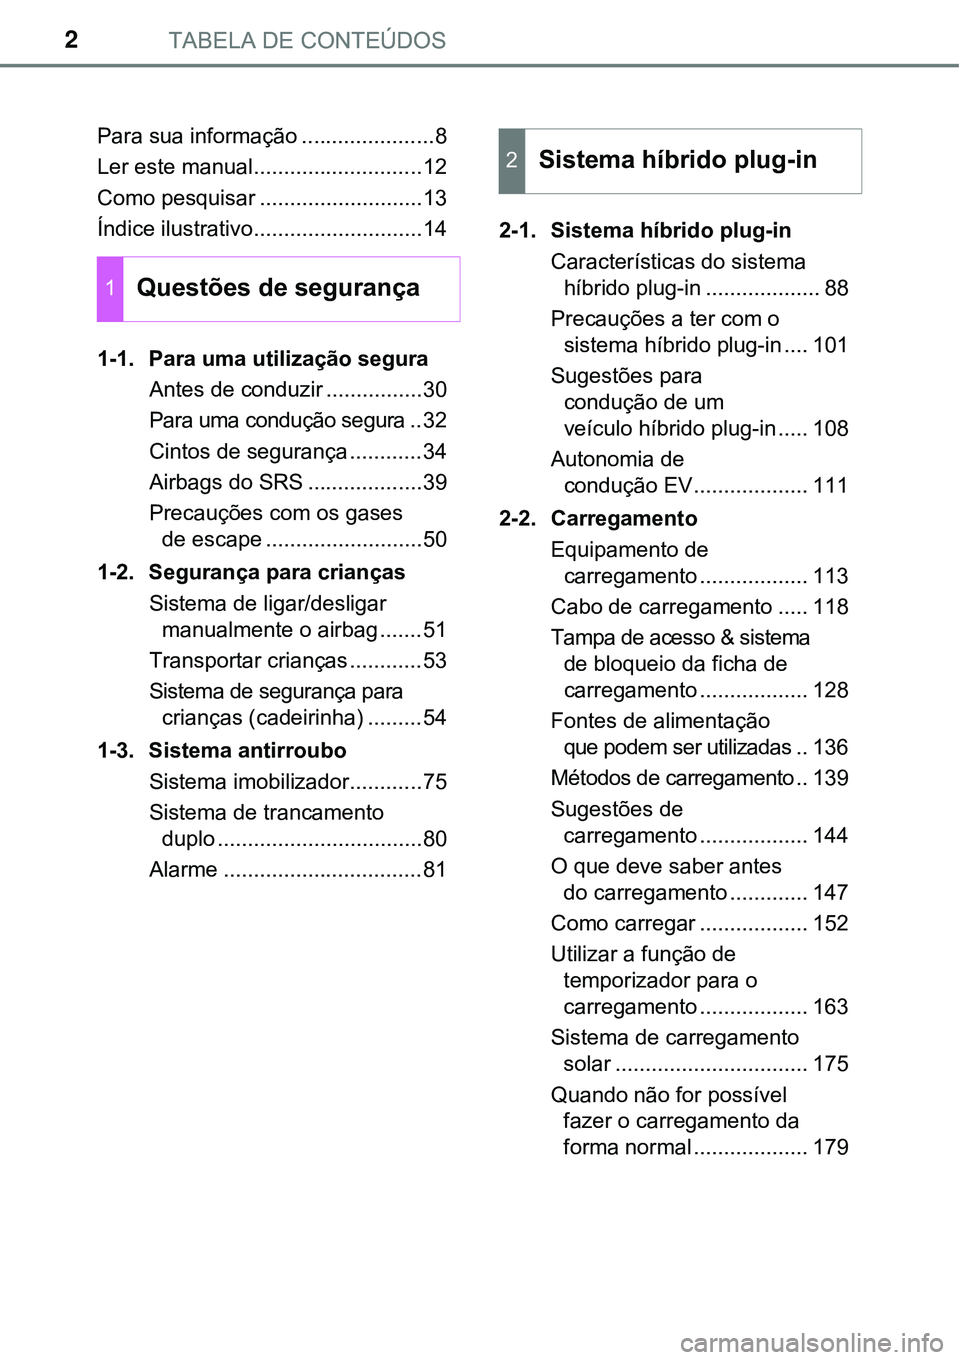 TOYOTA PRIUS PLUG-IN HYBRID 2017  Manual de utilização (in Portuguese) TABELA DE CONTEÚDOS2
Para sua informação ......................8
Ler este manual............................12
Como pesquisar ...........................13
Índice ilustrativo......................